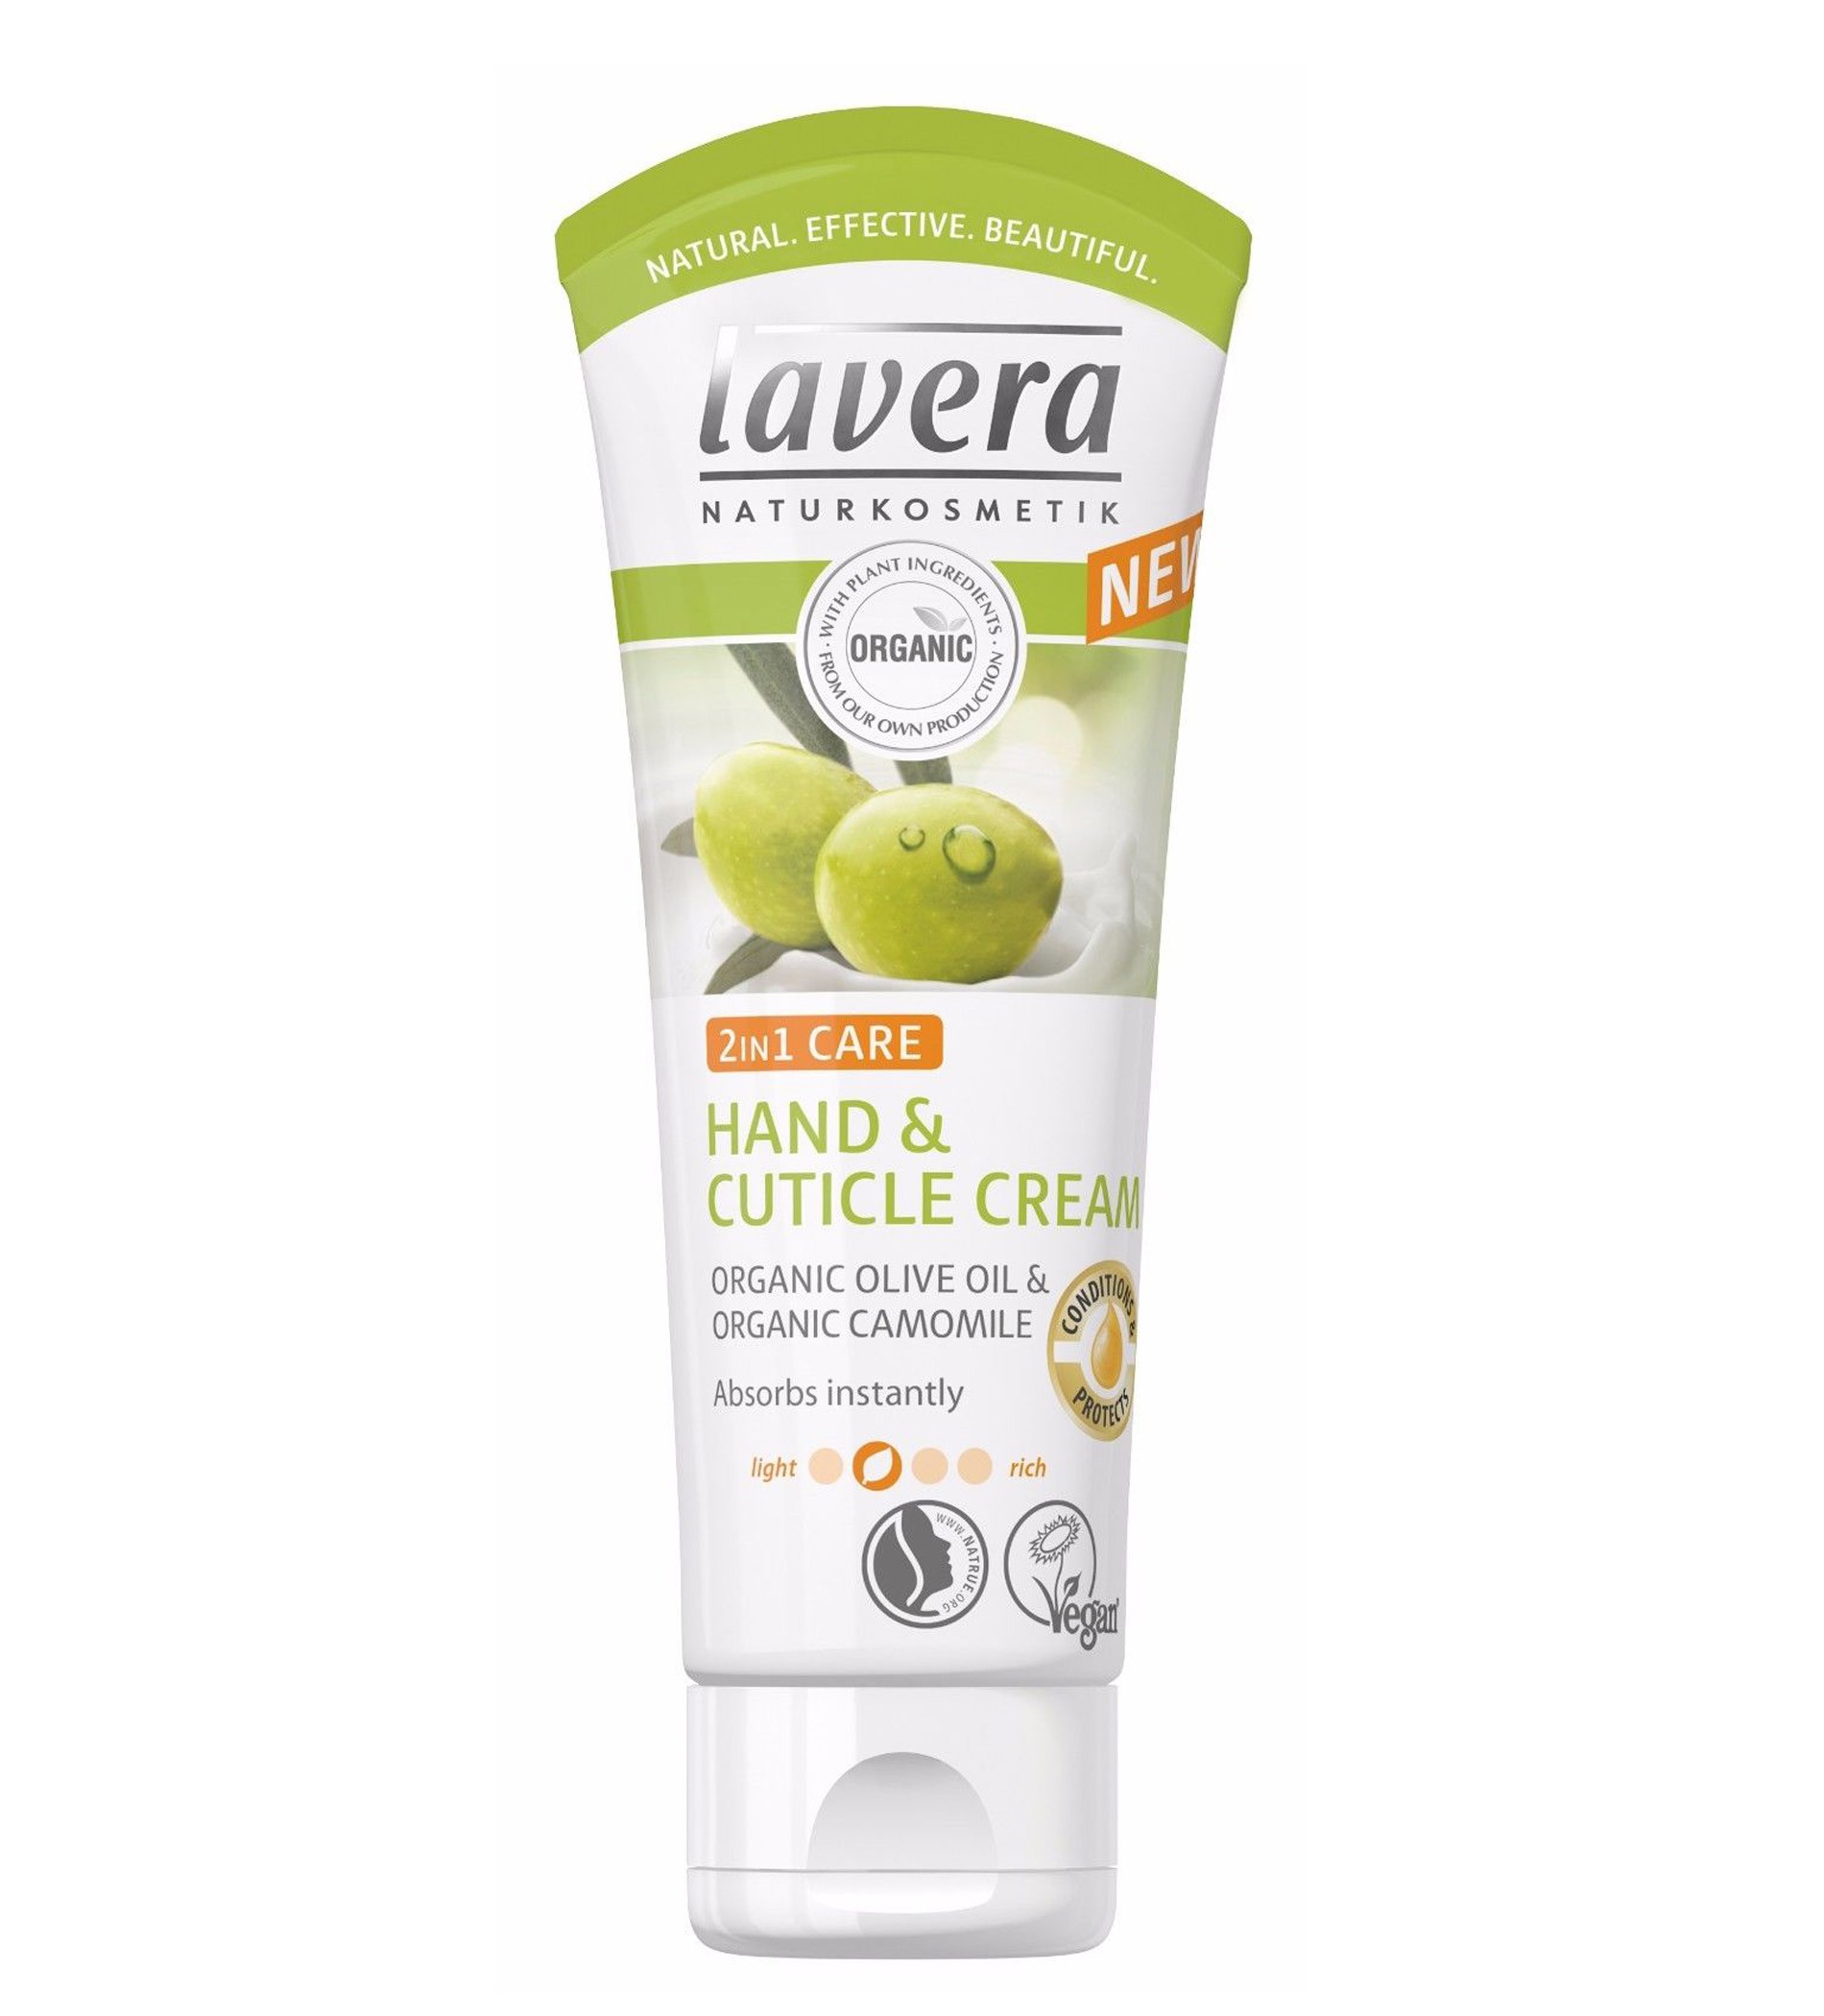 Lavera 2in1 Hand & Cuticle Cream with Organic Olive Oil & Camomile 